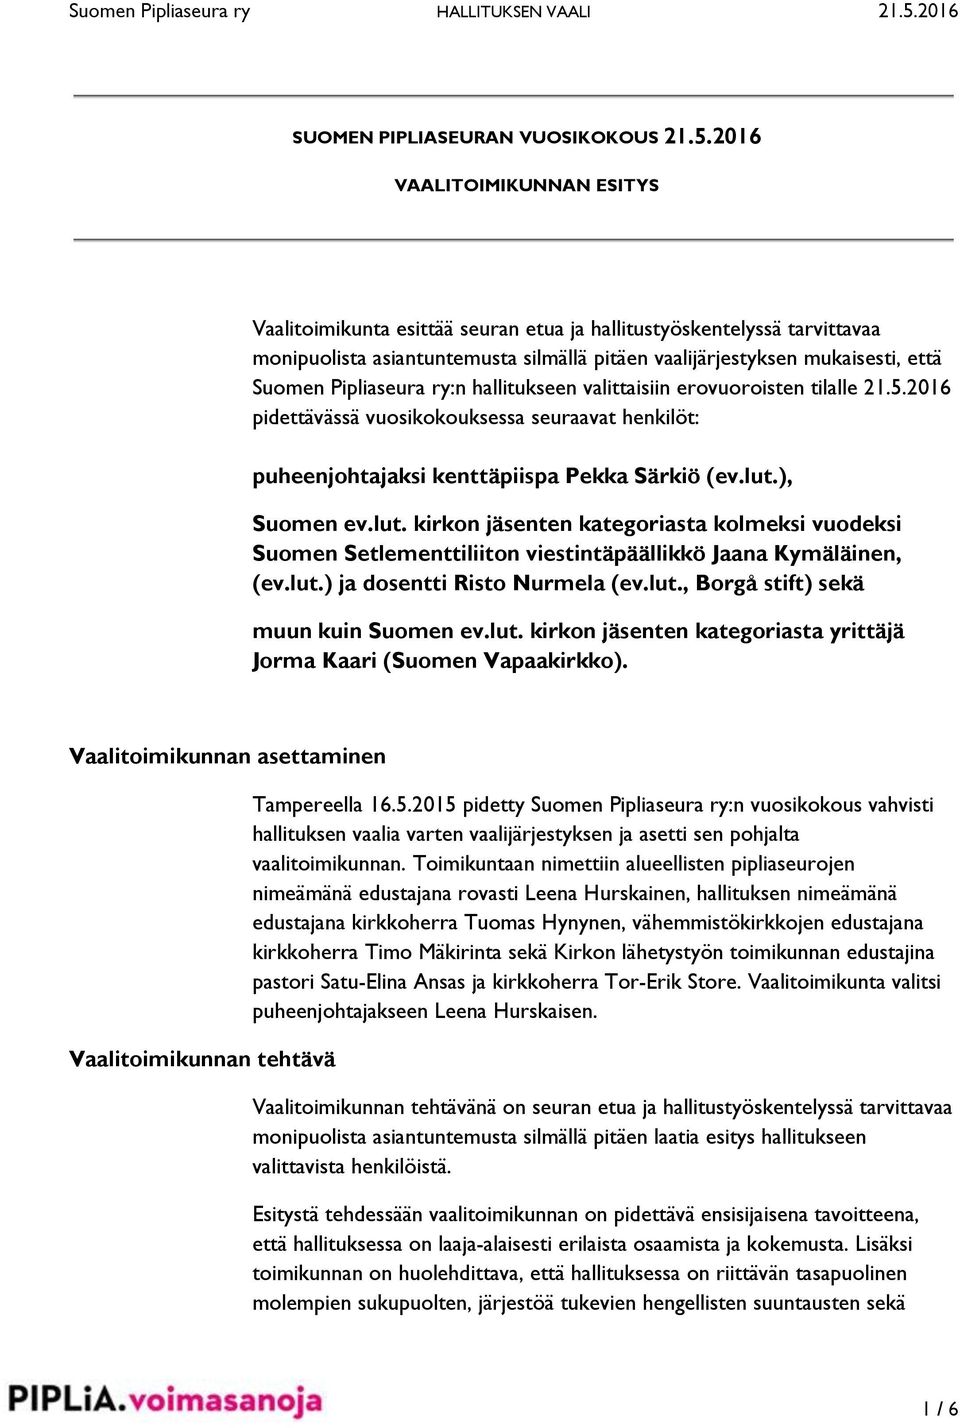 Pipliaseura ry:n hallitukseen valittaisiin erovuoroisten tilalle 21.5.2016 pidettävässä vuosikokouksessa seuraavat henkilöt: puheenjohtajaksi kenttäpiispa Pekka Särkiö (ev.lut.